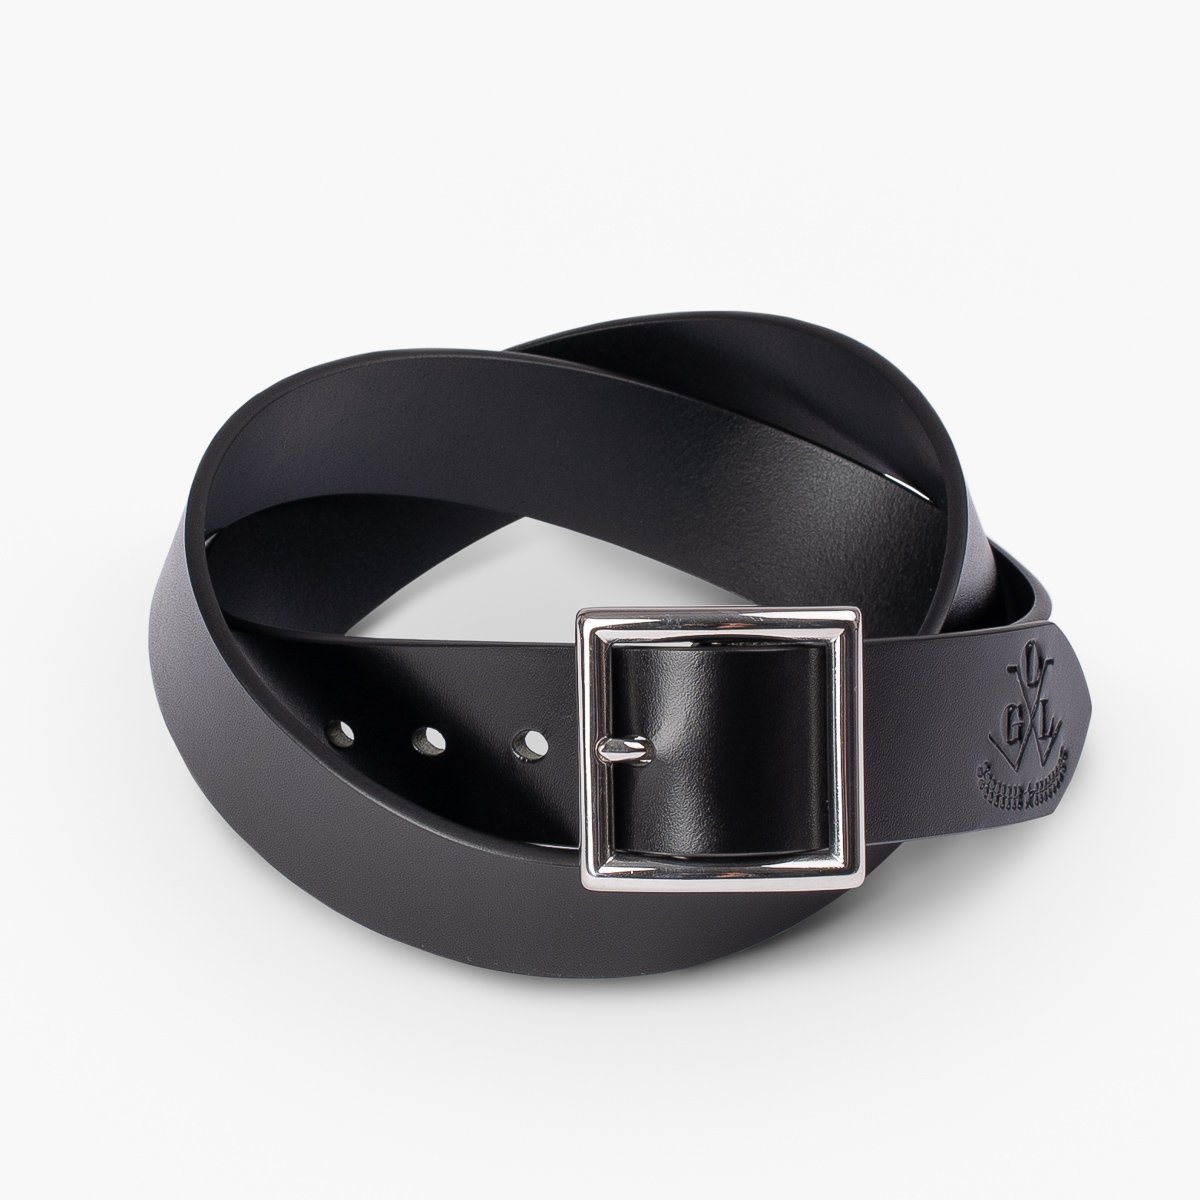 OGL - Belt- Vintage Buckle Leather Belt - Black – Brund